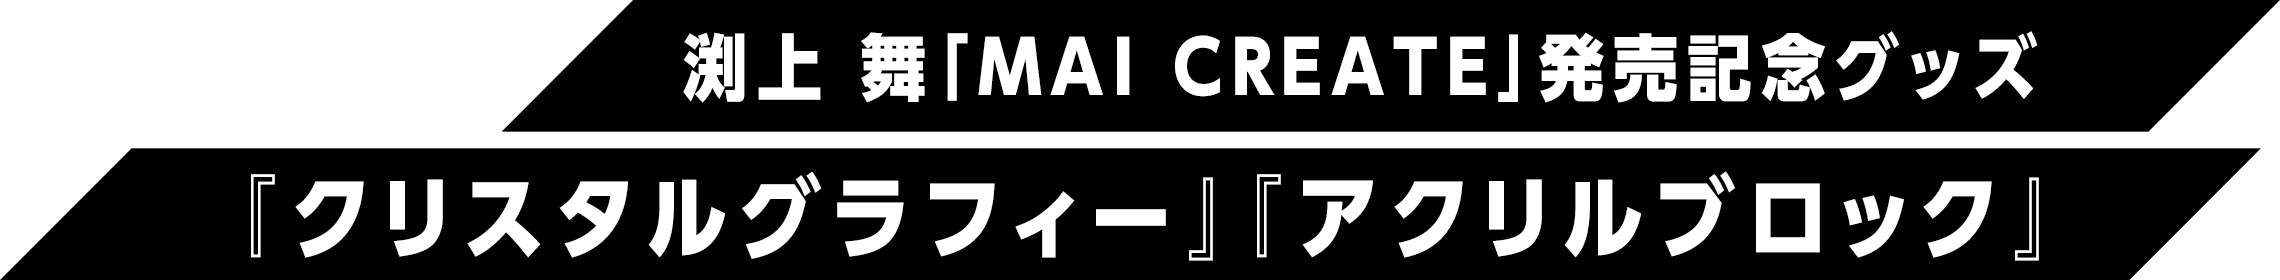 渕上 舞「MAI CREATE」発売記念グッズ『クリスタルグラフィー』『アクリルブロック』